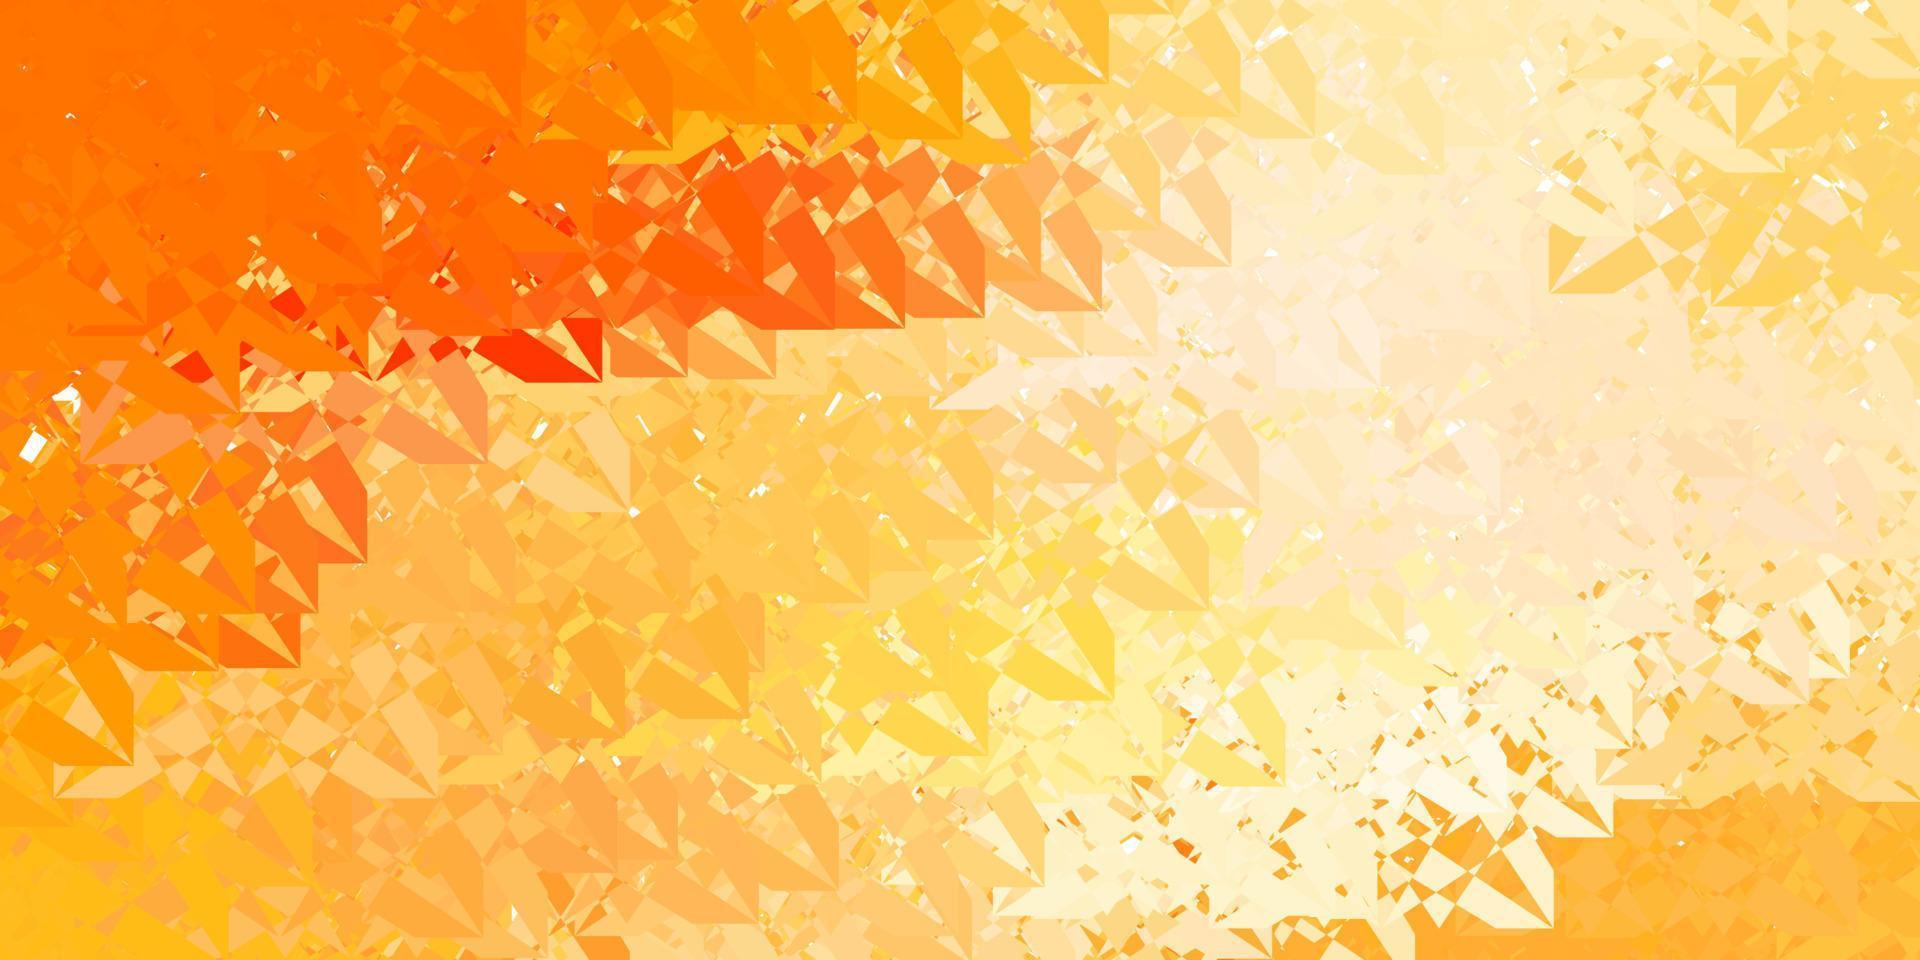 padrão de vetor laranja escuro com formas poligonais.